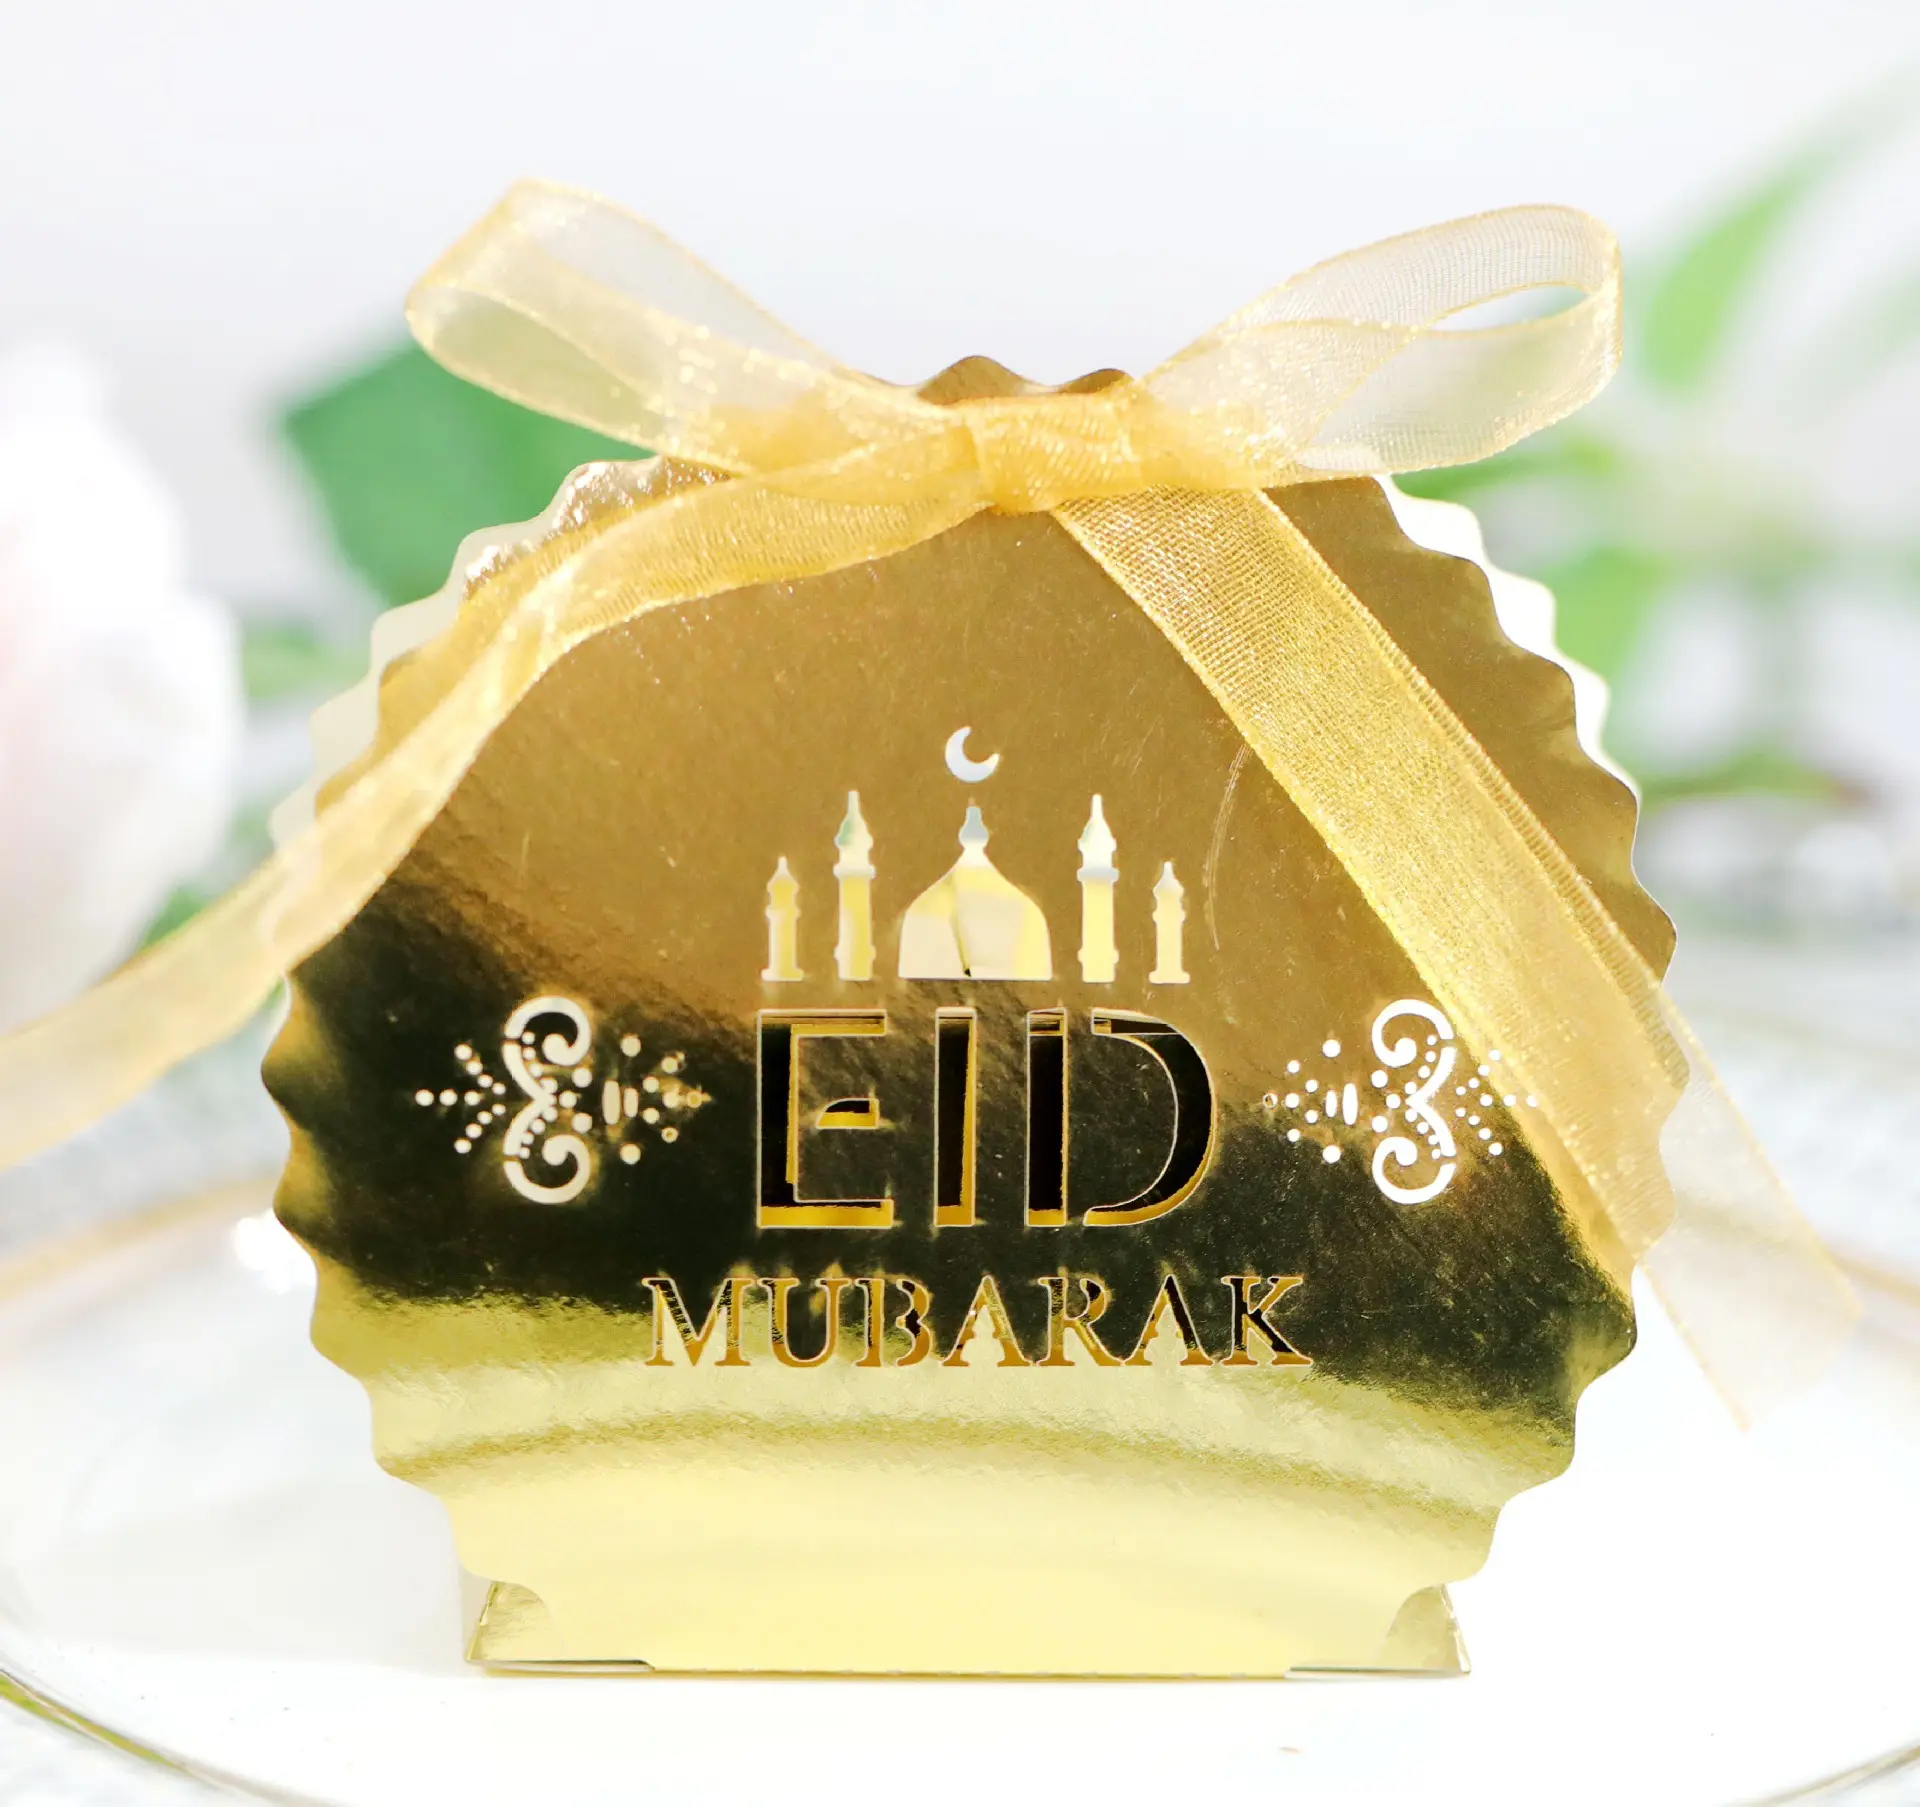 イスラム教徒のイードラマダンムバラックレーザーカットロマンチックな結婚式の好意誕生日ペーパークラフトケーキボックスキャンディーボックス